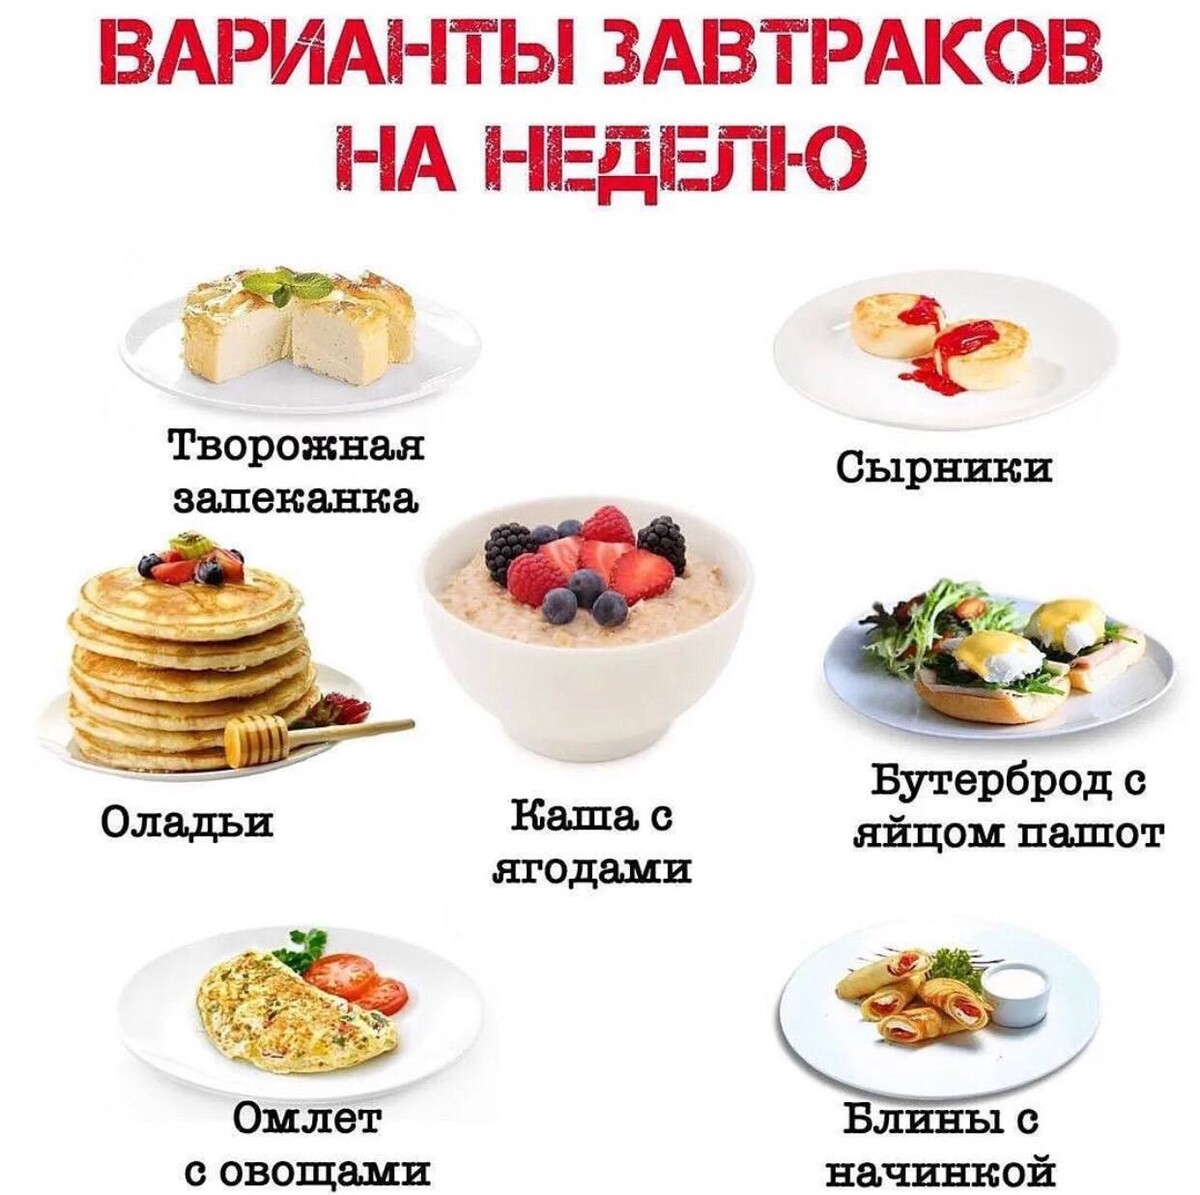 Завтрак варианты меню